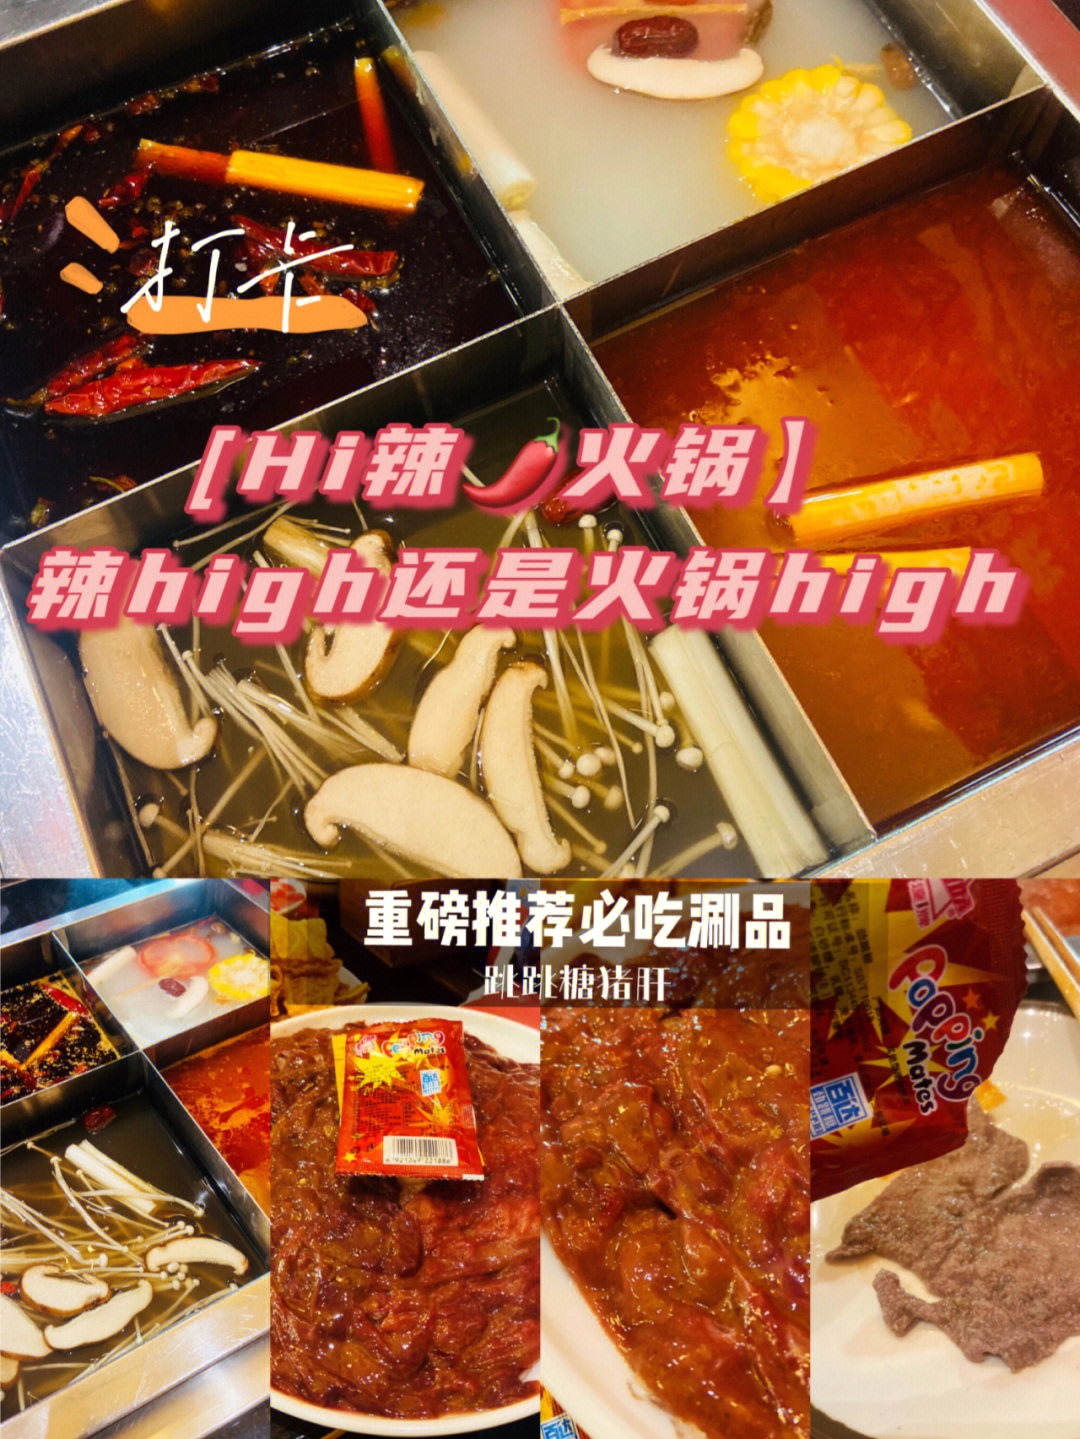 好久没吃hi辣火锅了,就上新了很多菜品,这次在大悦城再吃high辣火锅